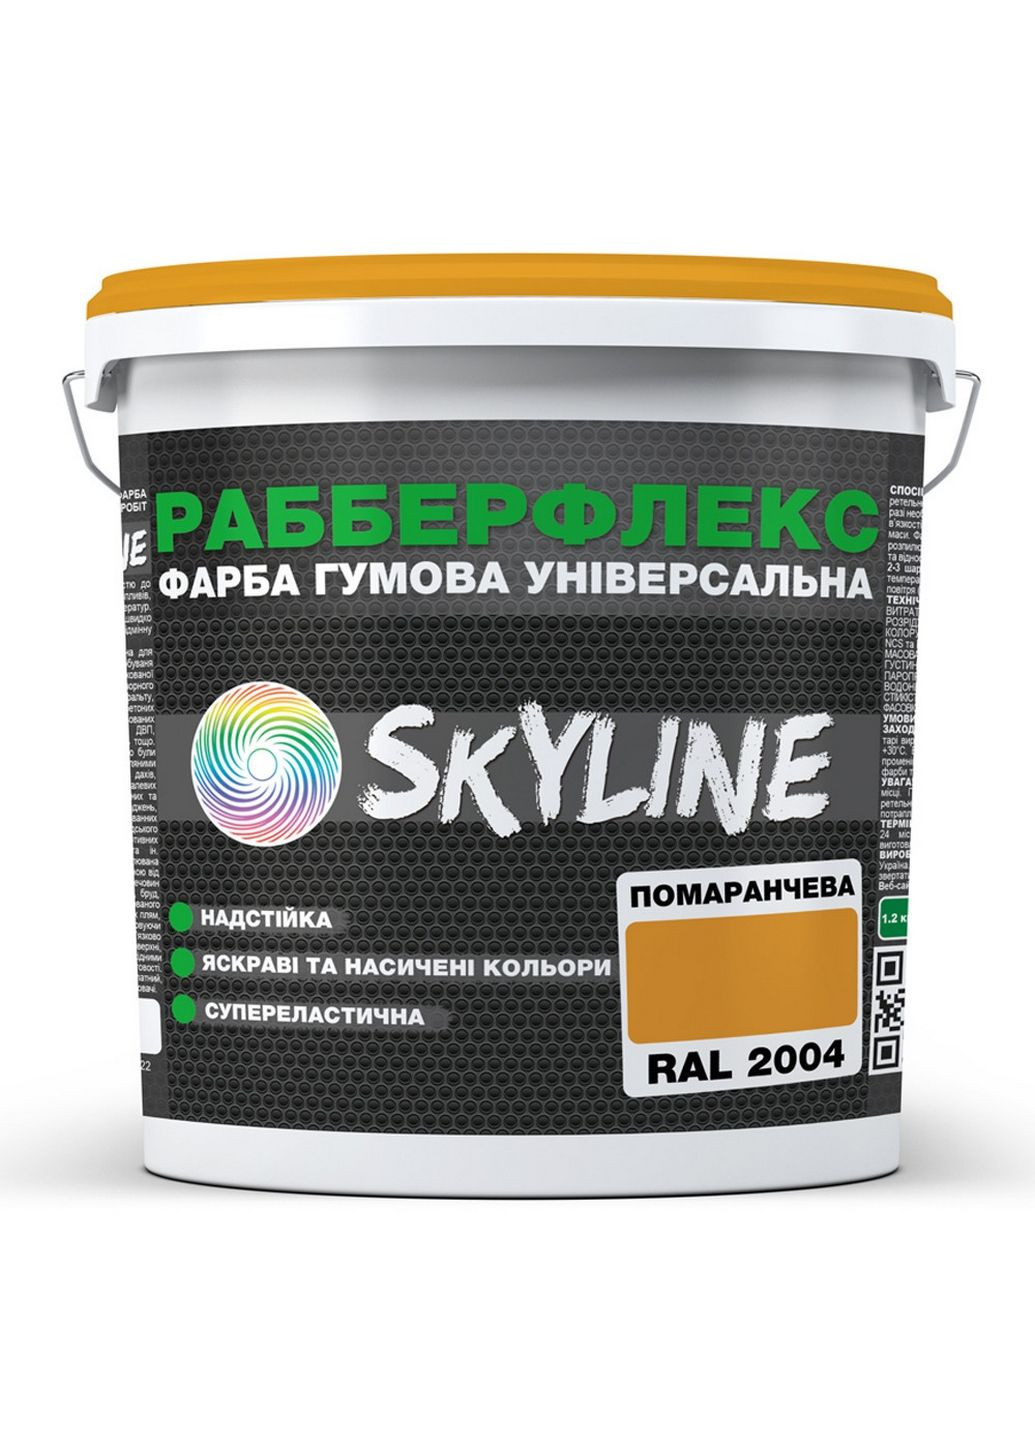 Надстійка фарба гумова супереластична «РабберФлекс» 3,6 кг SkyLine (289365743)